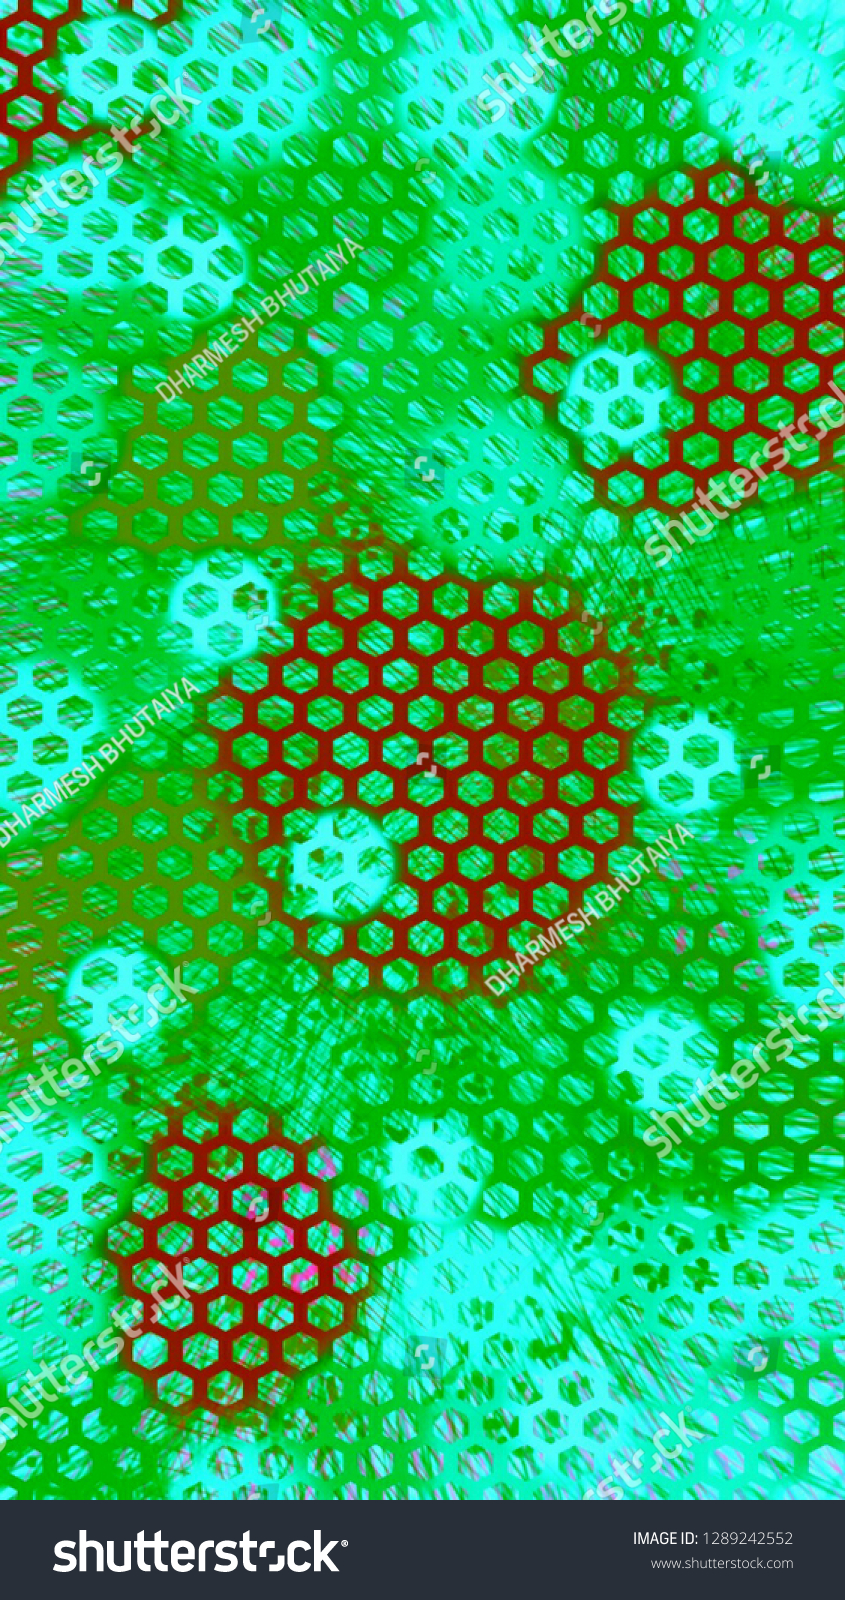 Hexagonal Net Hd Wallpaper Background Design Stock Illustration 1289242552